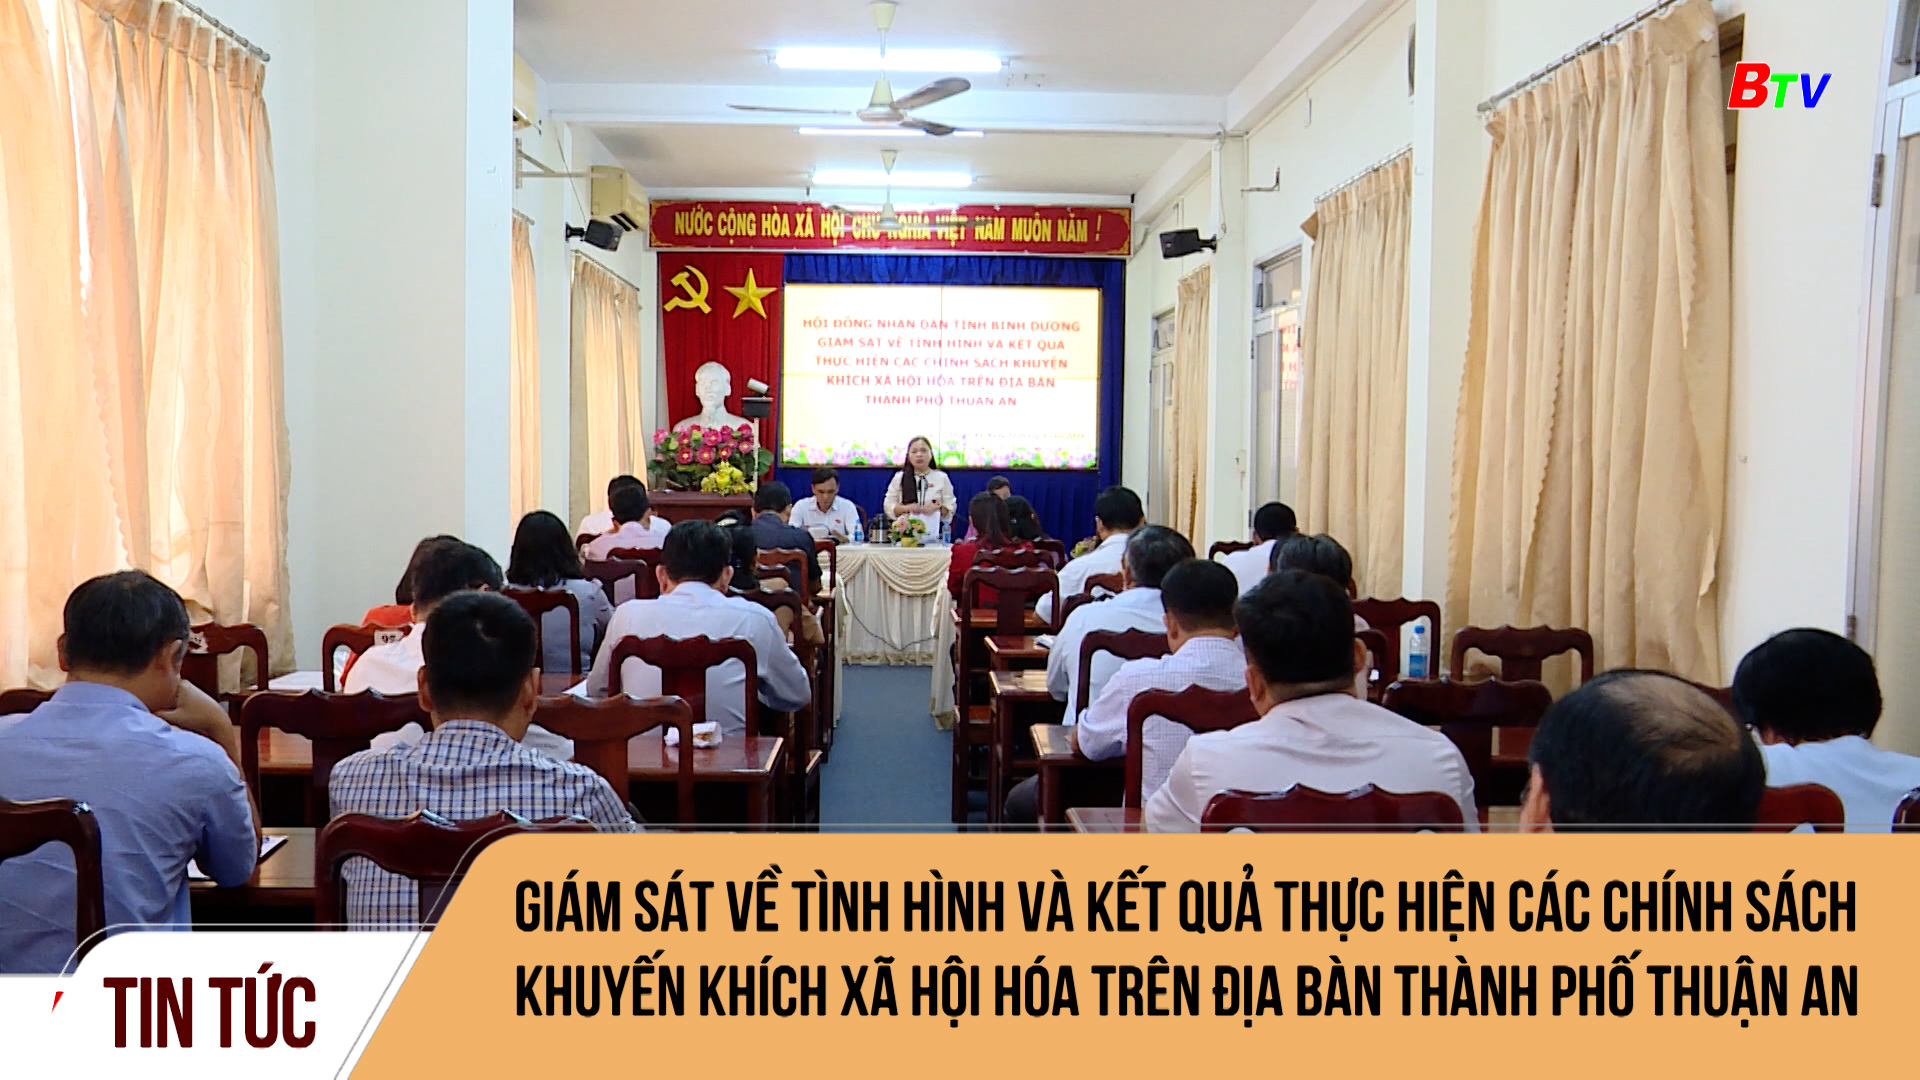 Giám sát về tình hình và kết quả thực hiện các chính sách khuyến khích xã hội hóa trên địa bàn thành phố Thuận An